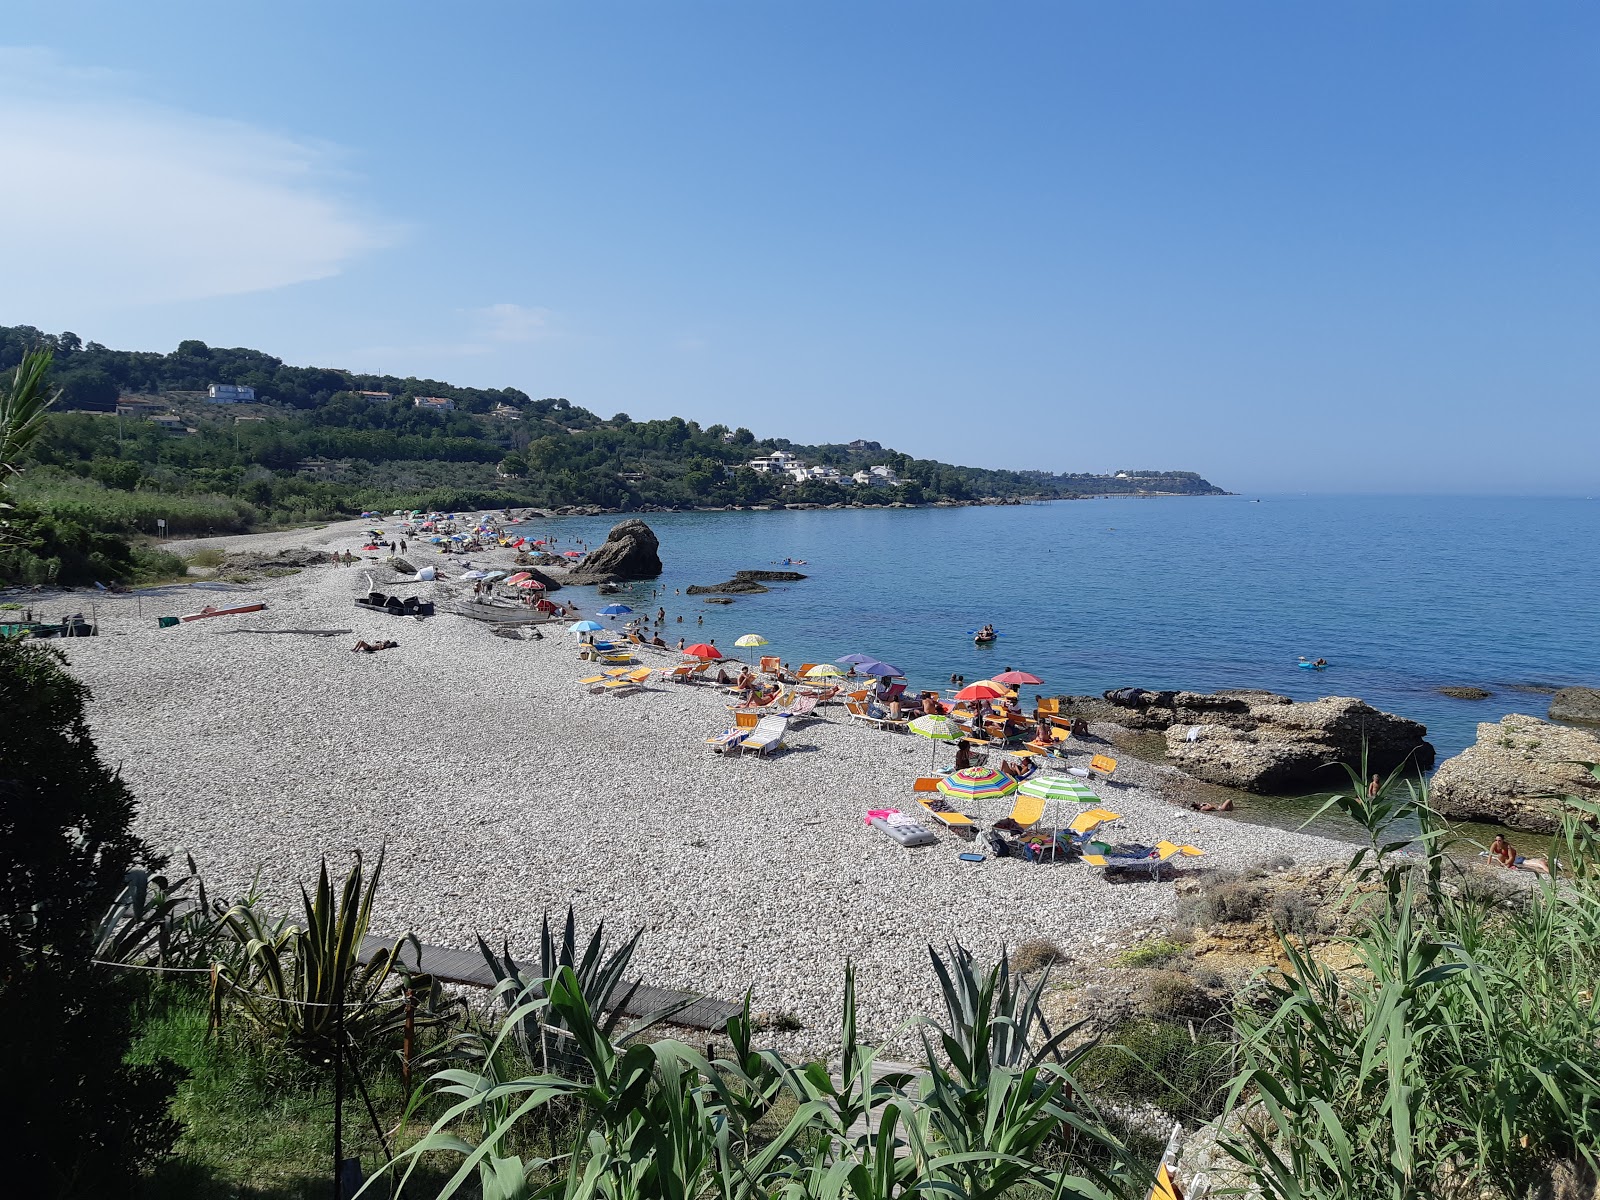 Spiaggia di San Nicola'in fotoğrafı hafif çakıl yüzey ile